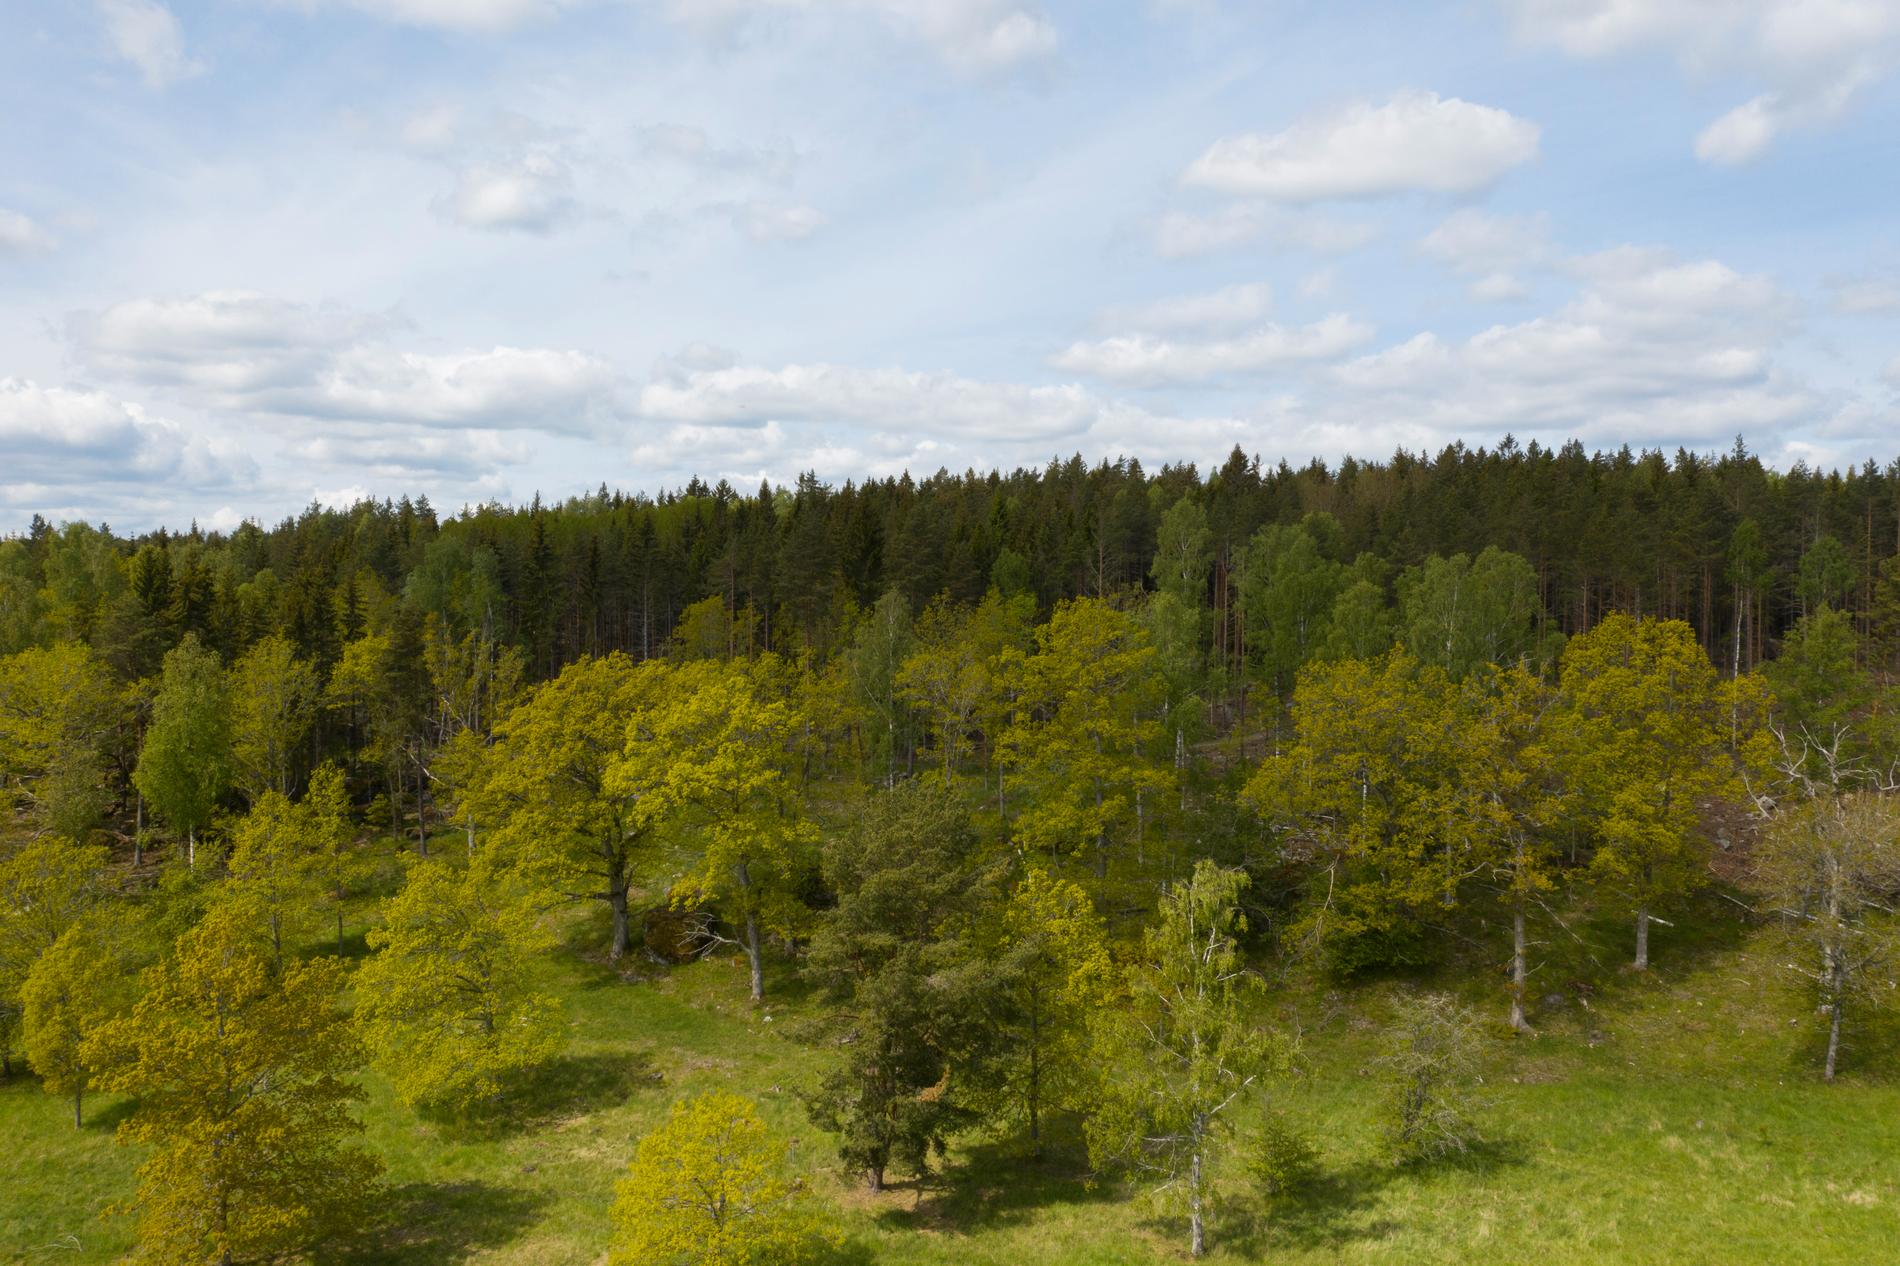 Lösningen är mer varierade skogar, enligt experterna. Arkivbild.